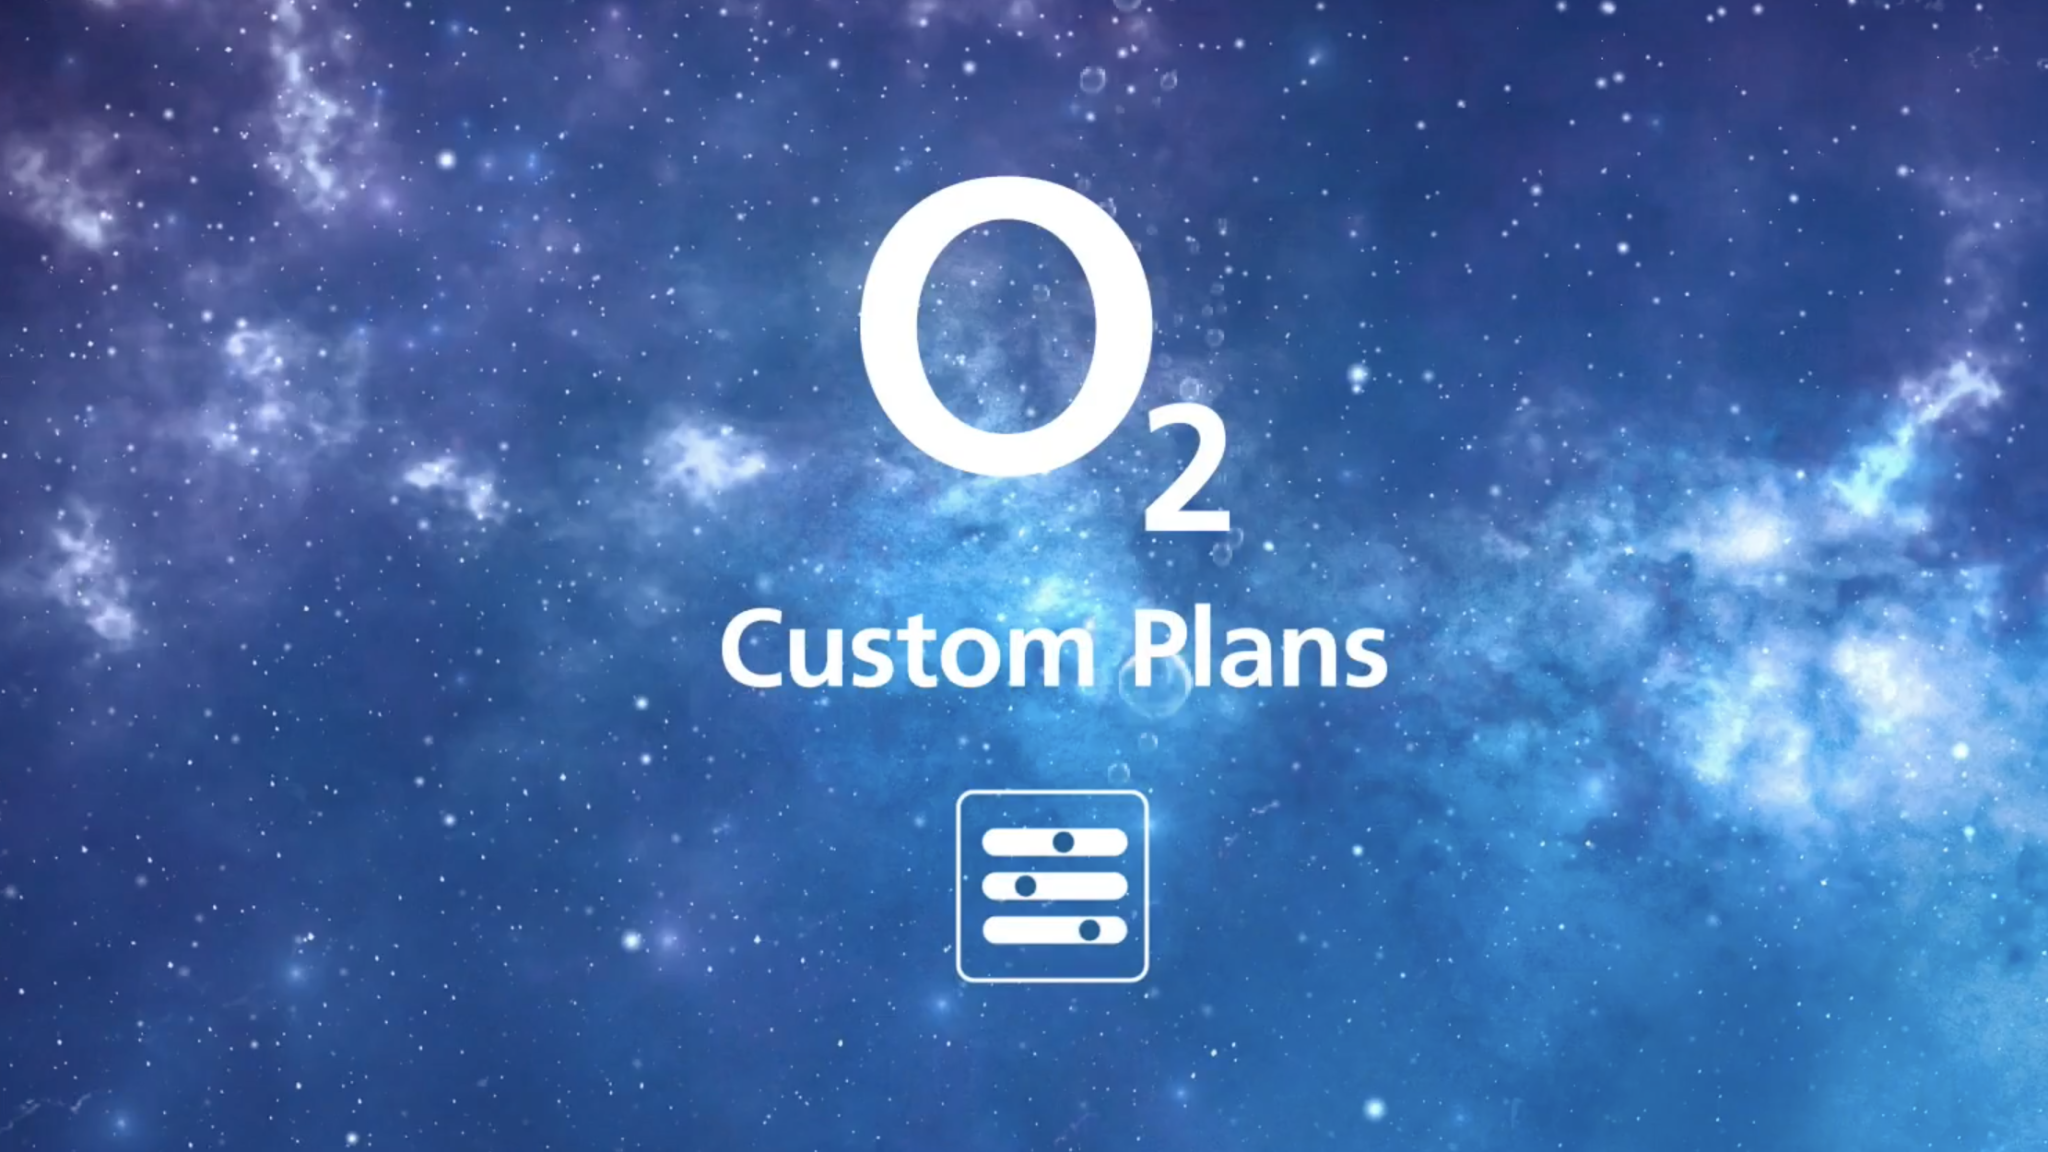 O2 unveils it’s revolutionary O2 custom plans